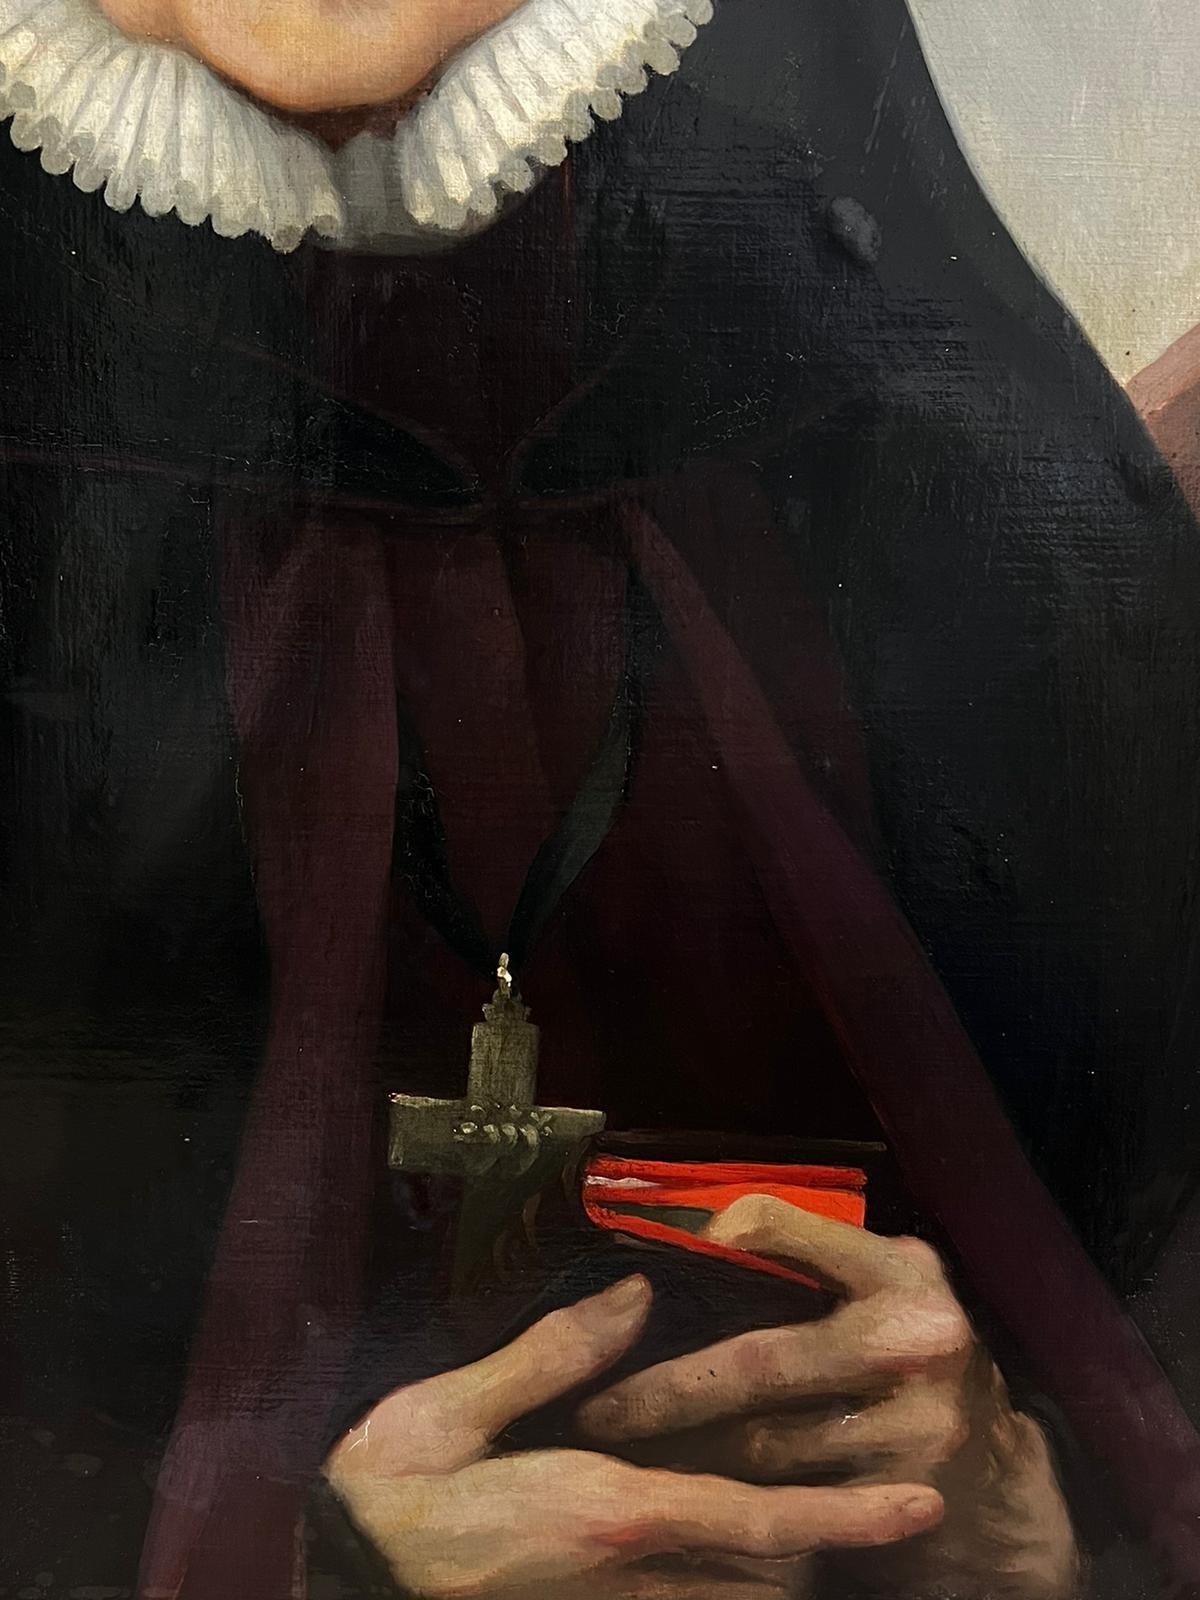 Portrait d'une religieuse
par Joseph Albert, signé et daté au dos, 1898
peinture à l'huile sur toile, non encadrée
toile : 24 x 18 pouces
provenance : collection privée, Angleterre 
état : globalement très bon et présentable